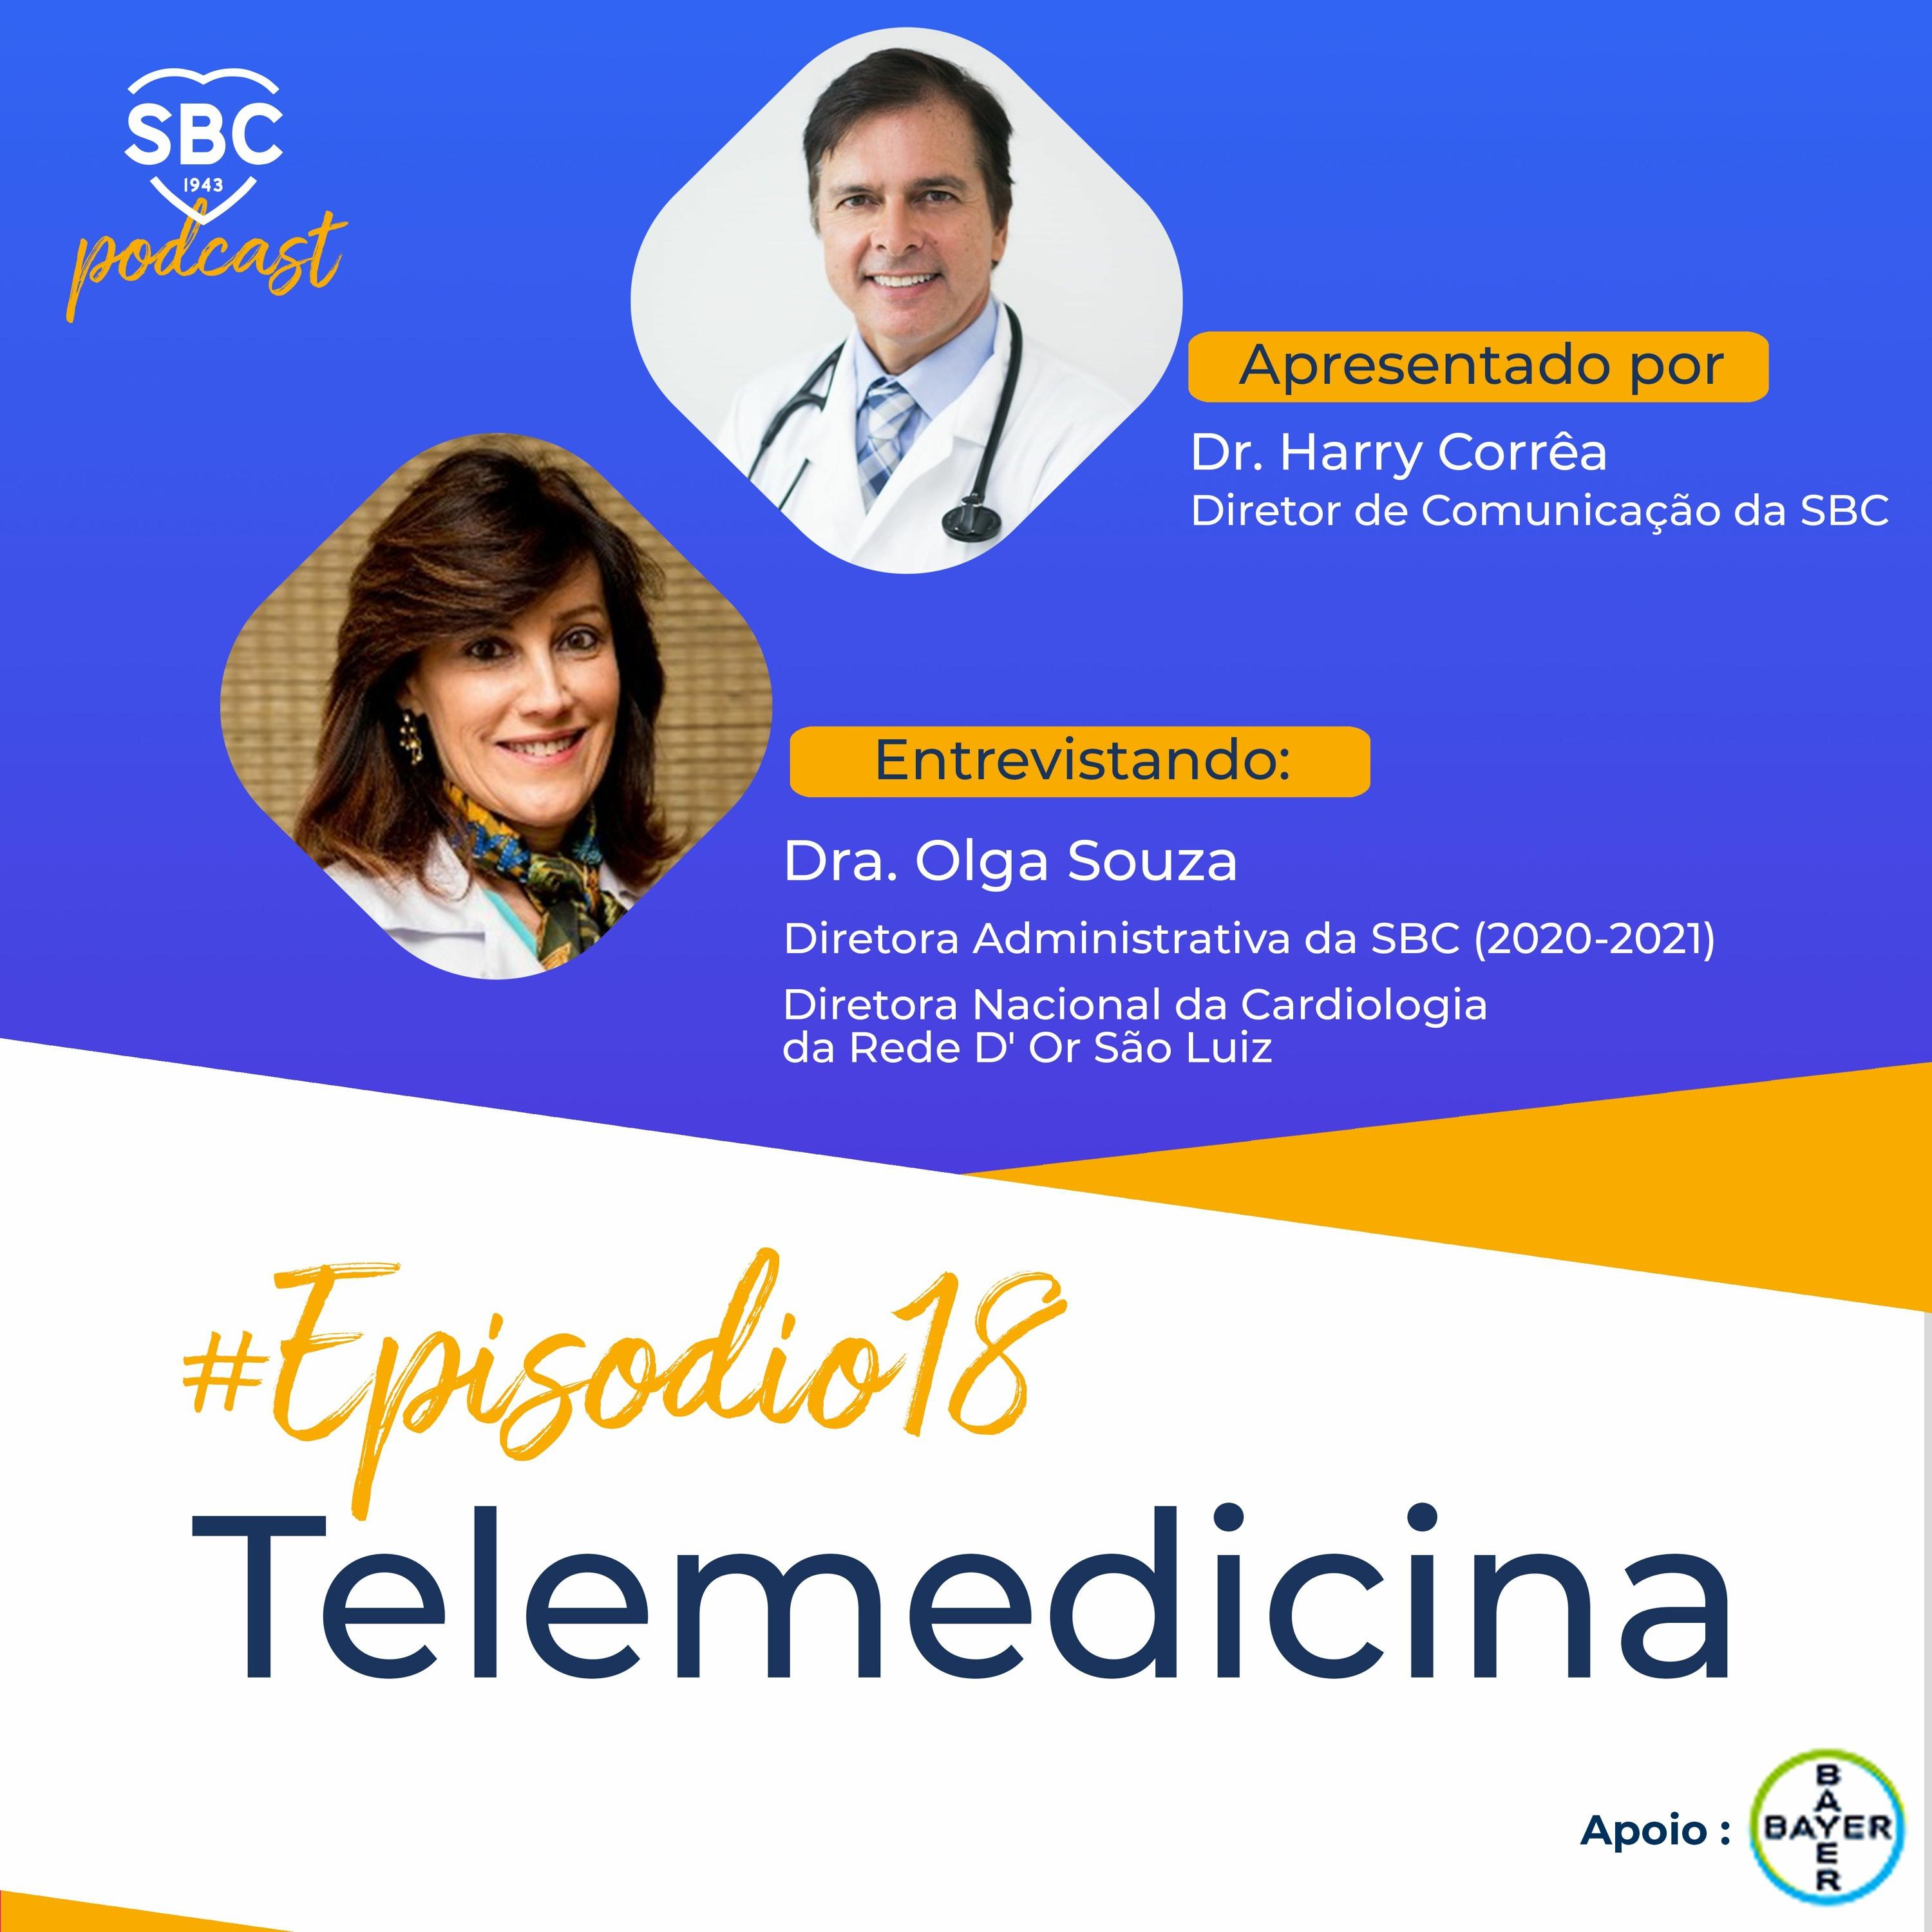 Neste episódio a Dra Olga Souza apresenta o novo programa de telemedicina da SBC.